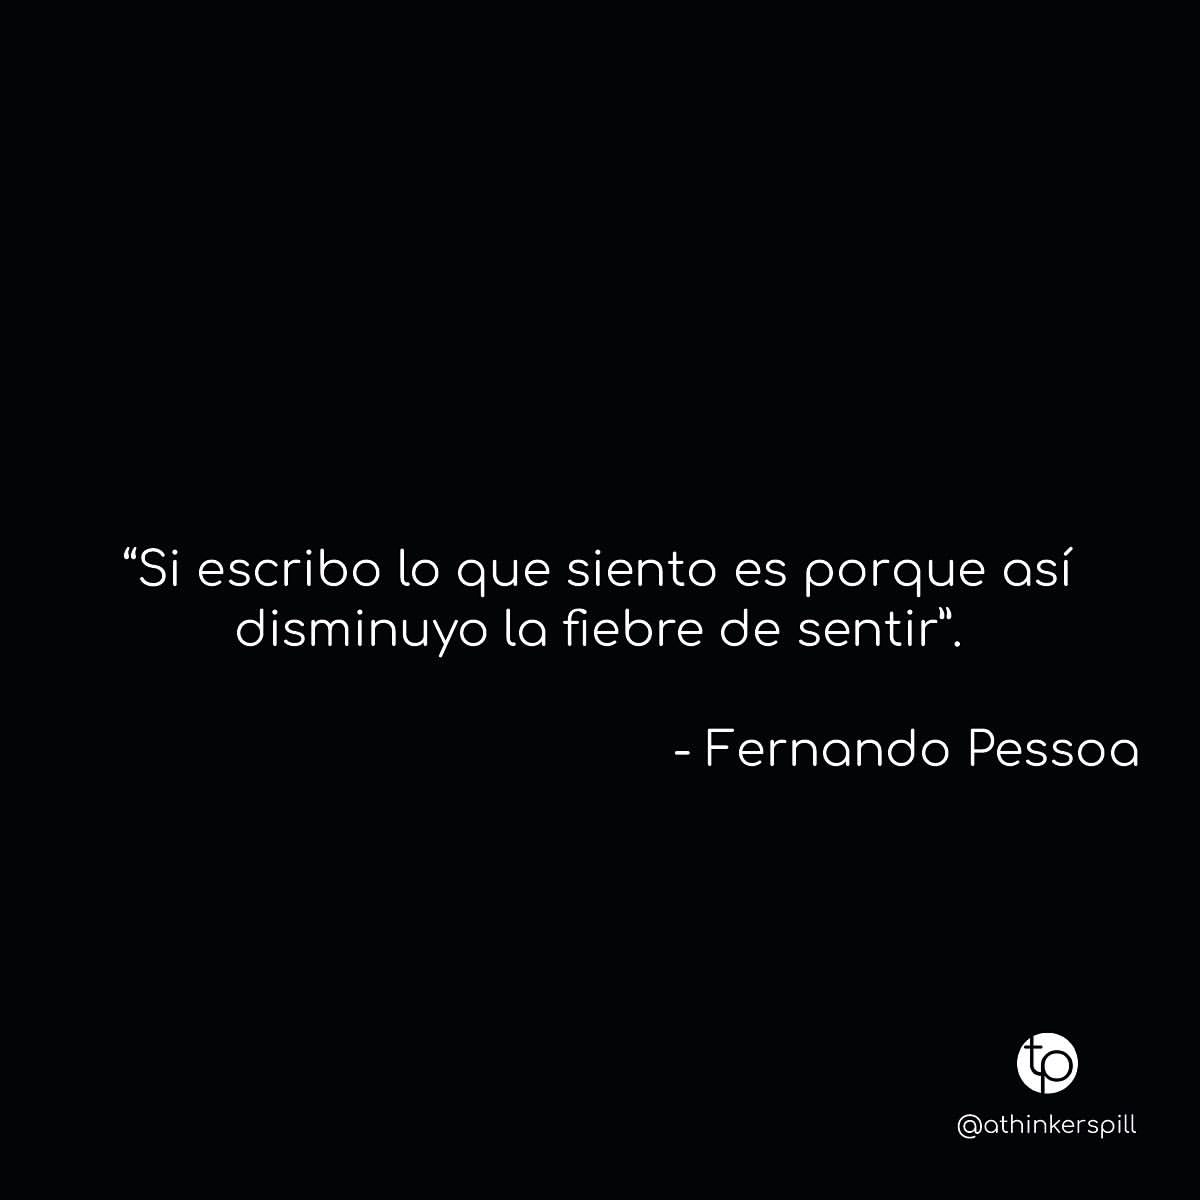 "Si escribo lo que siento es porque así disminuyo la fiebre de sentir". Fernando Pessoa.